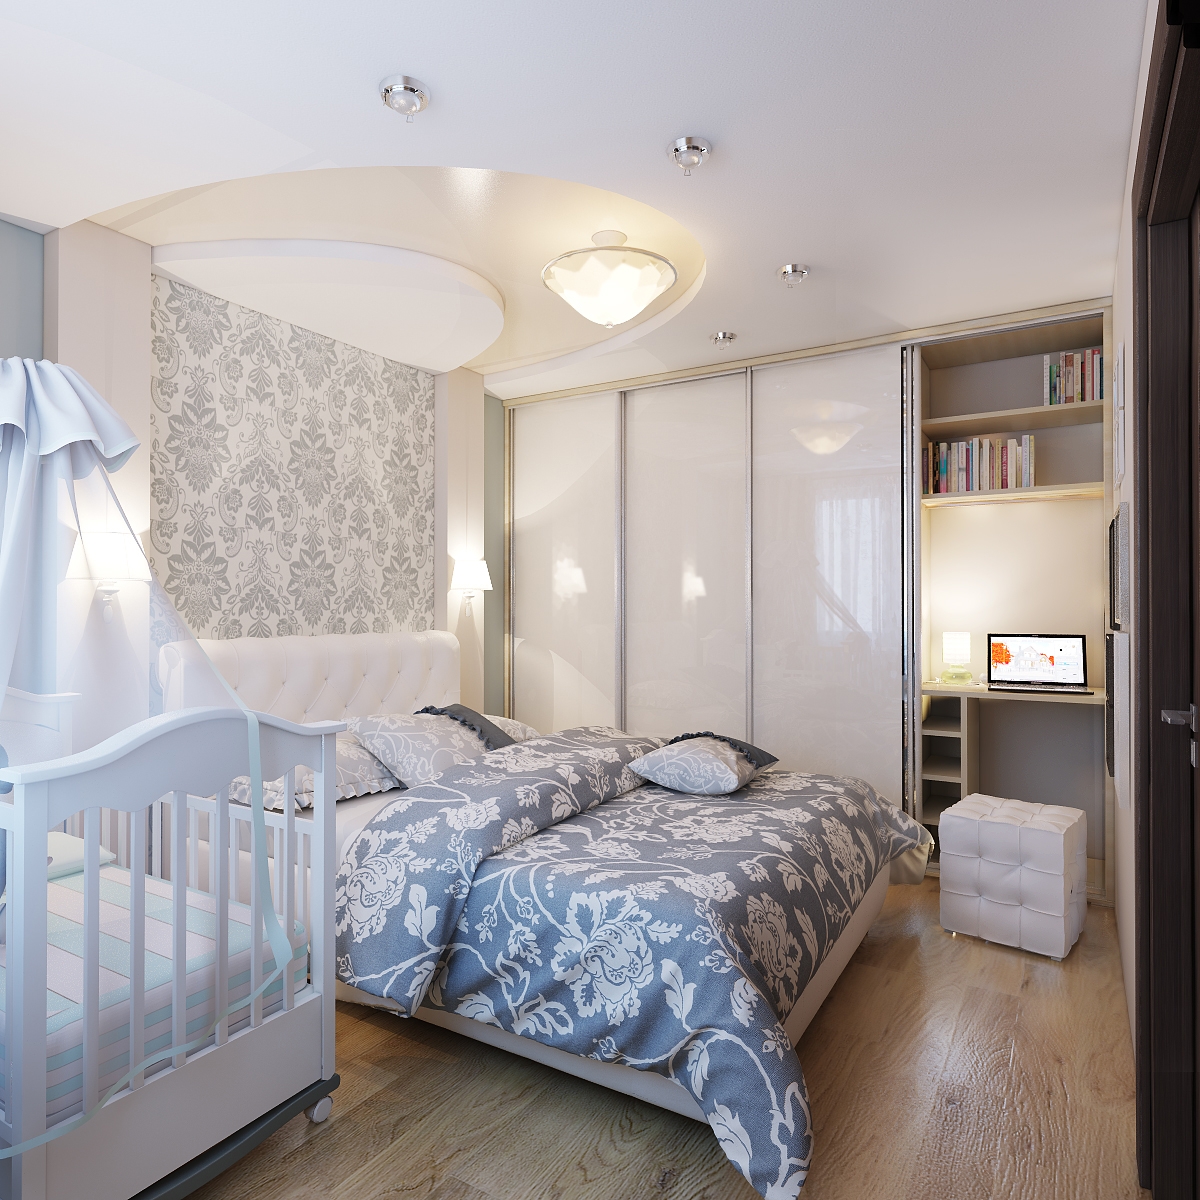 Дизайн комнаты с кроваткой для новорожденного